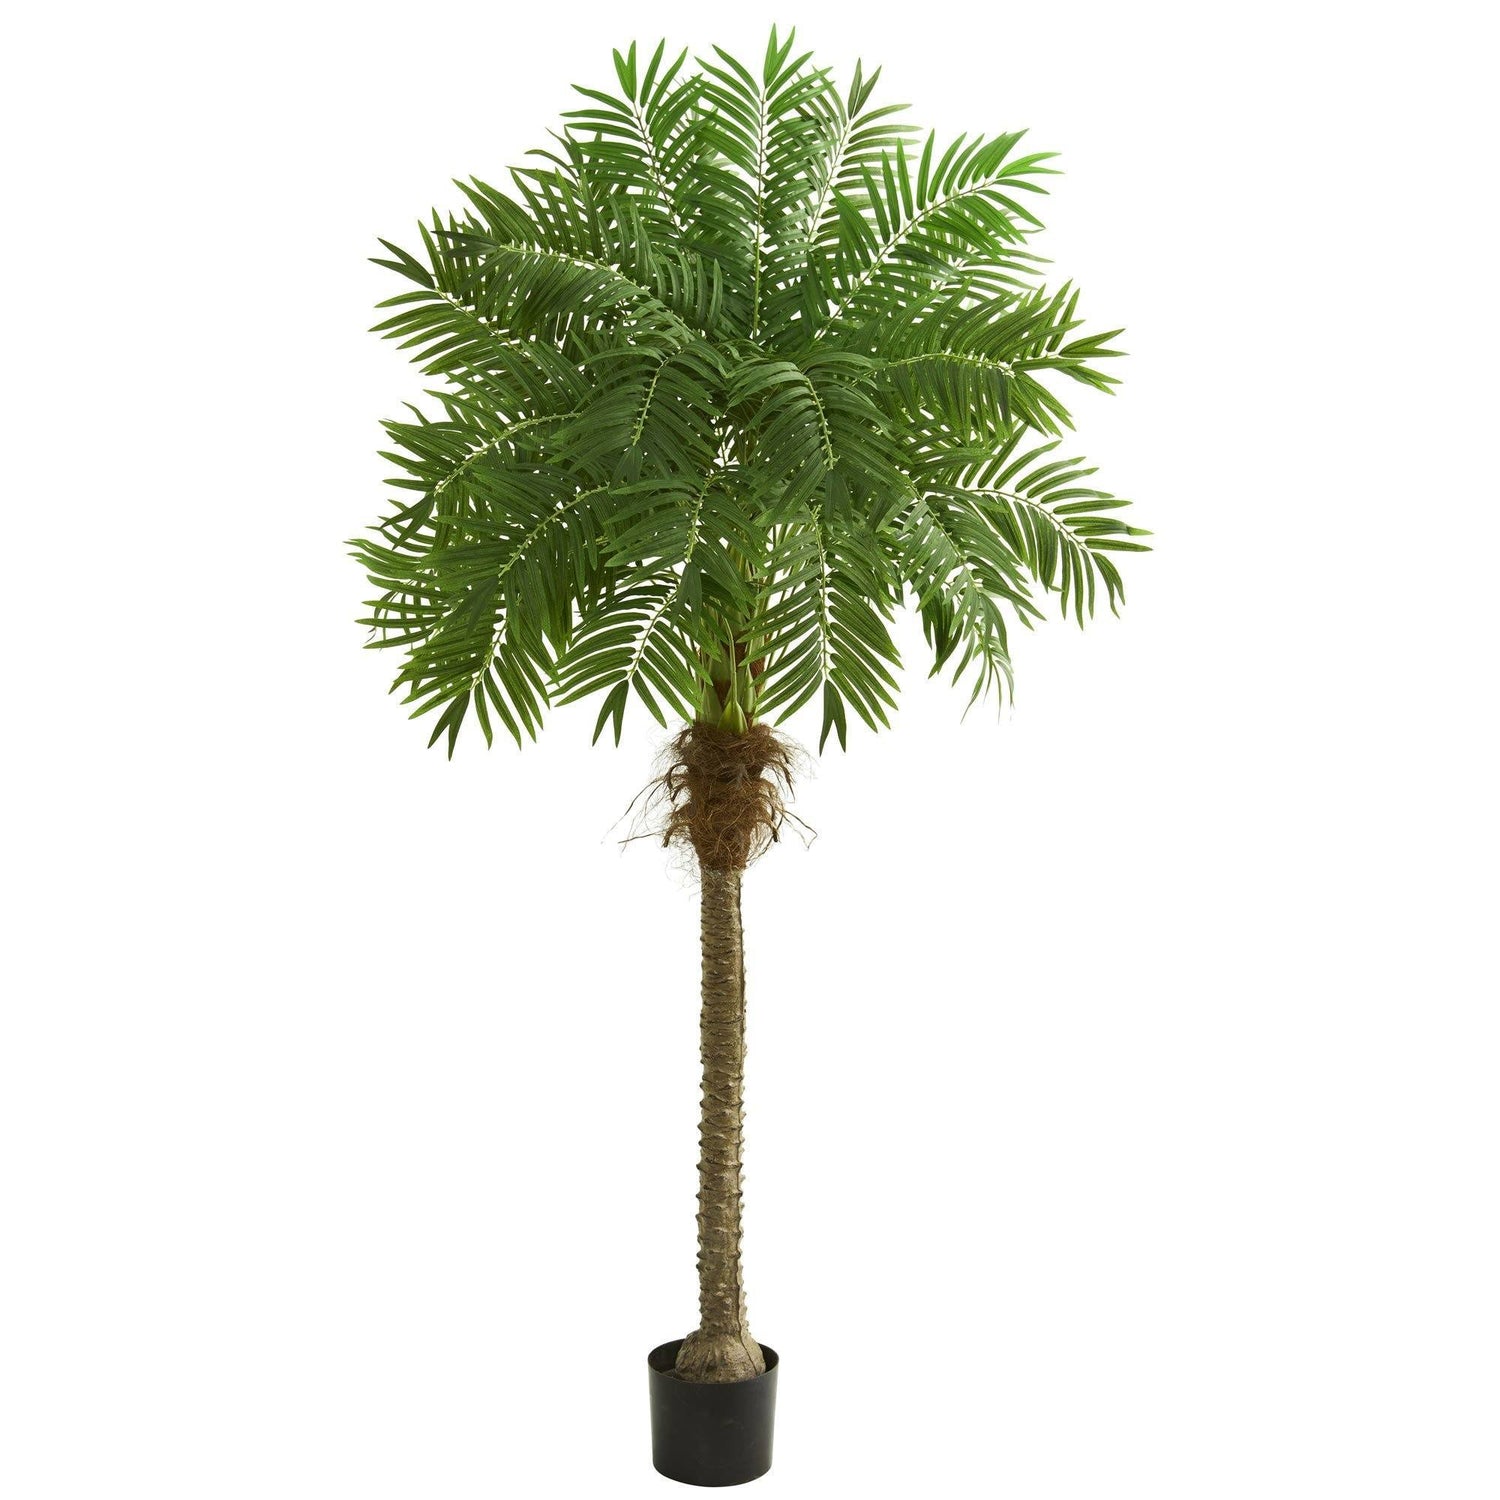 80” Robellini Palm Artificial Tree